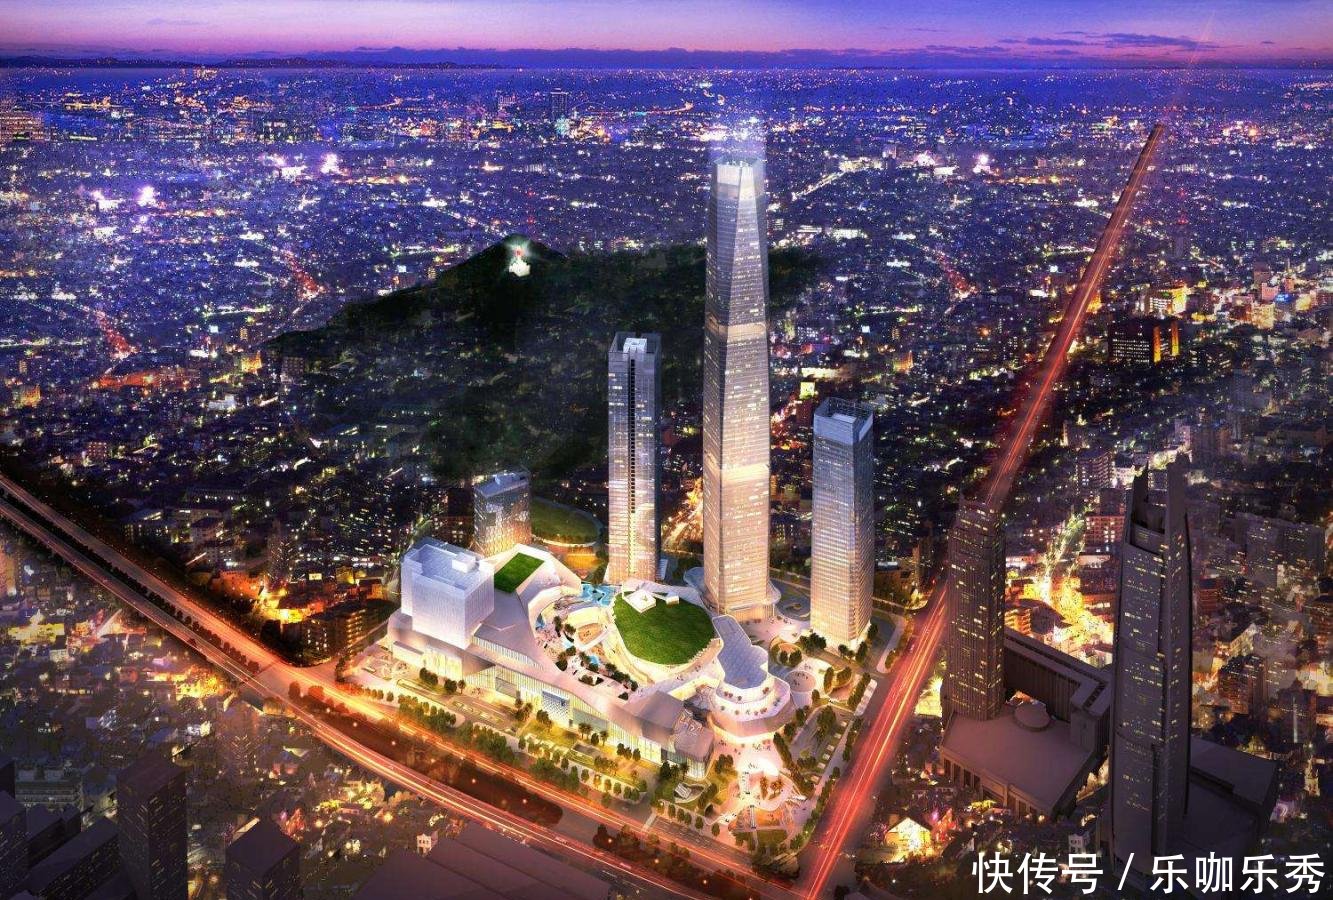 突破1万亿GDP 中国大城市的小目标 2018年预